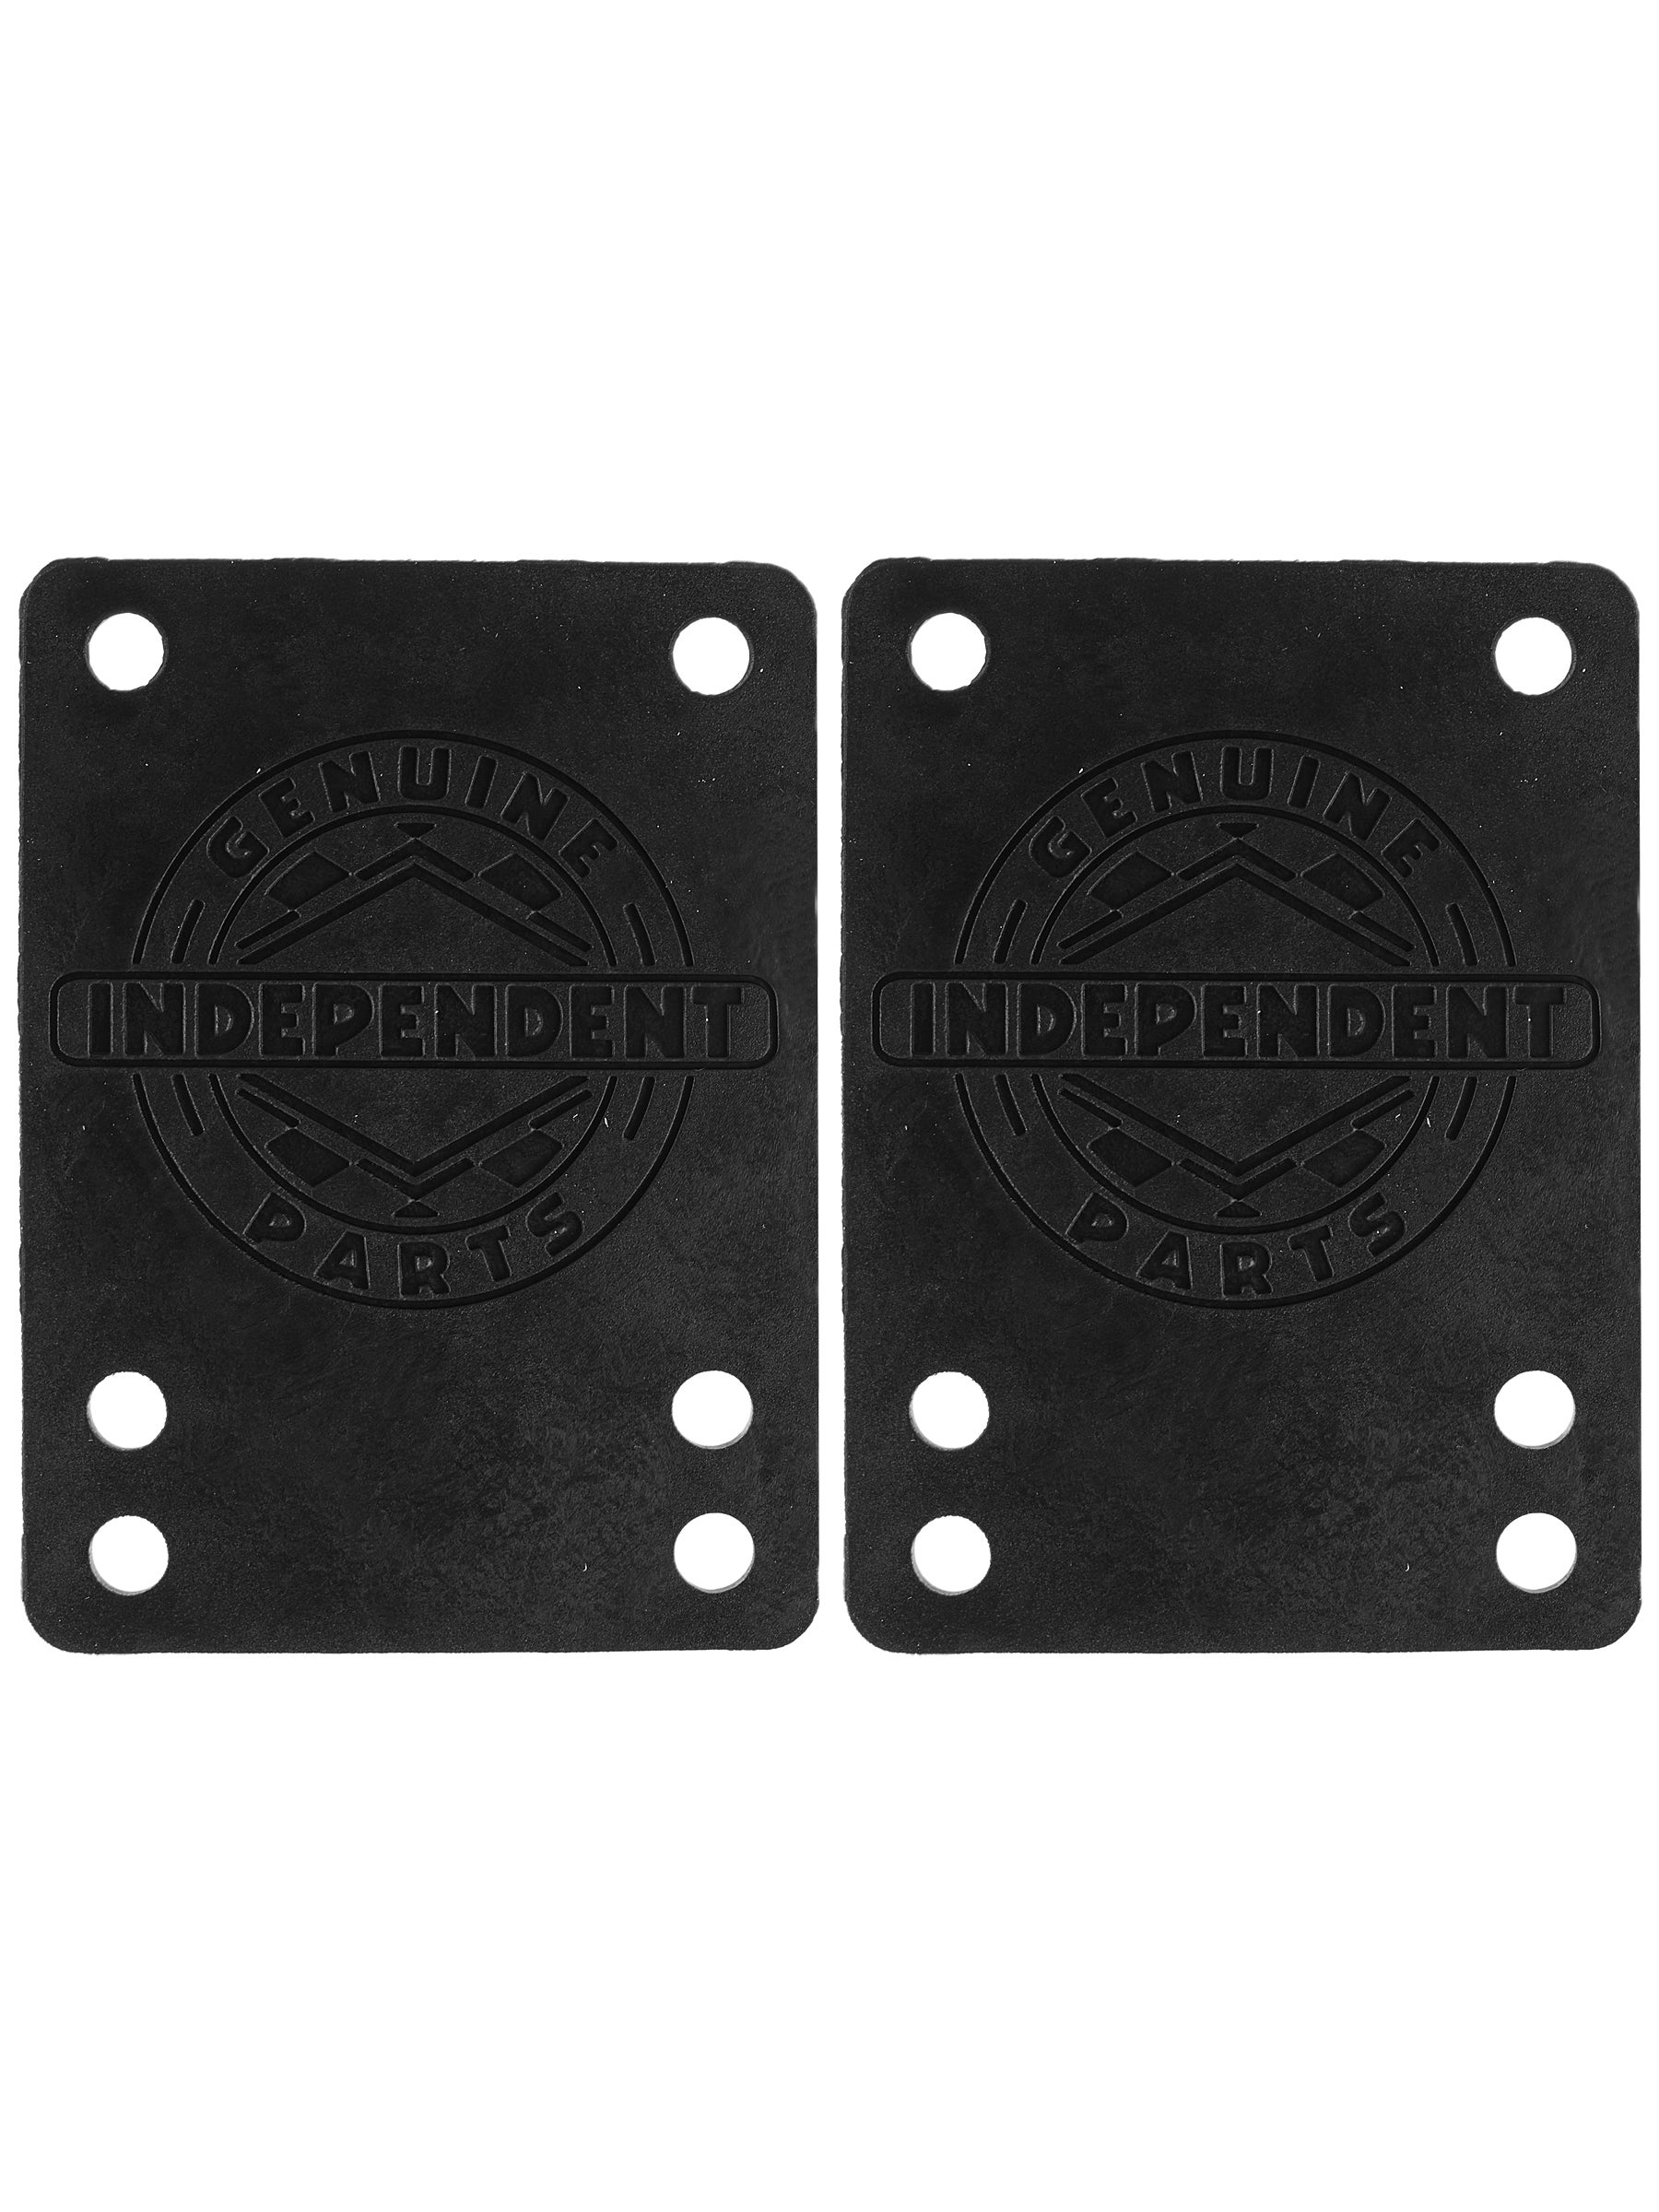 Independent Skateboard Hardware 1" Allen Black 1/8" Independent Shock Pads 